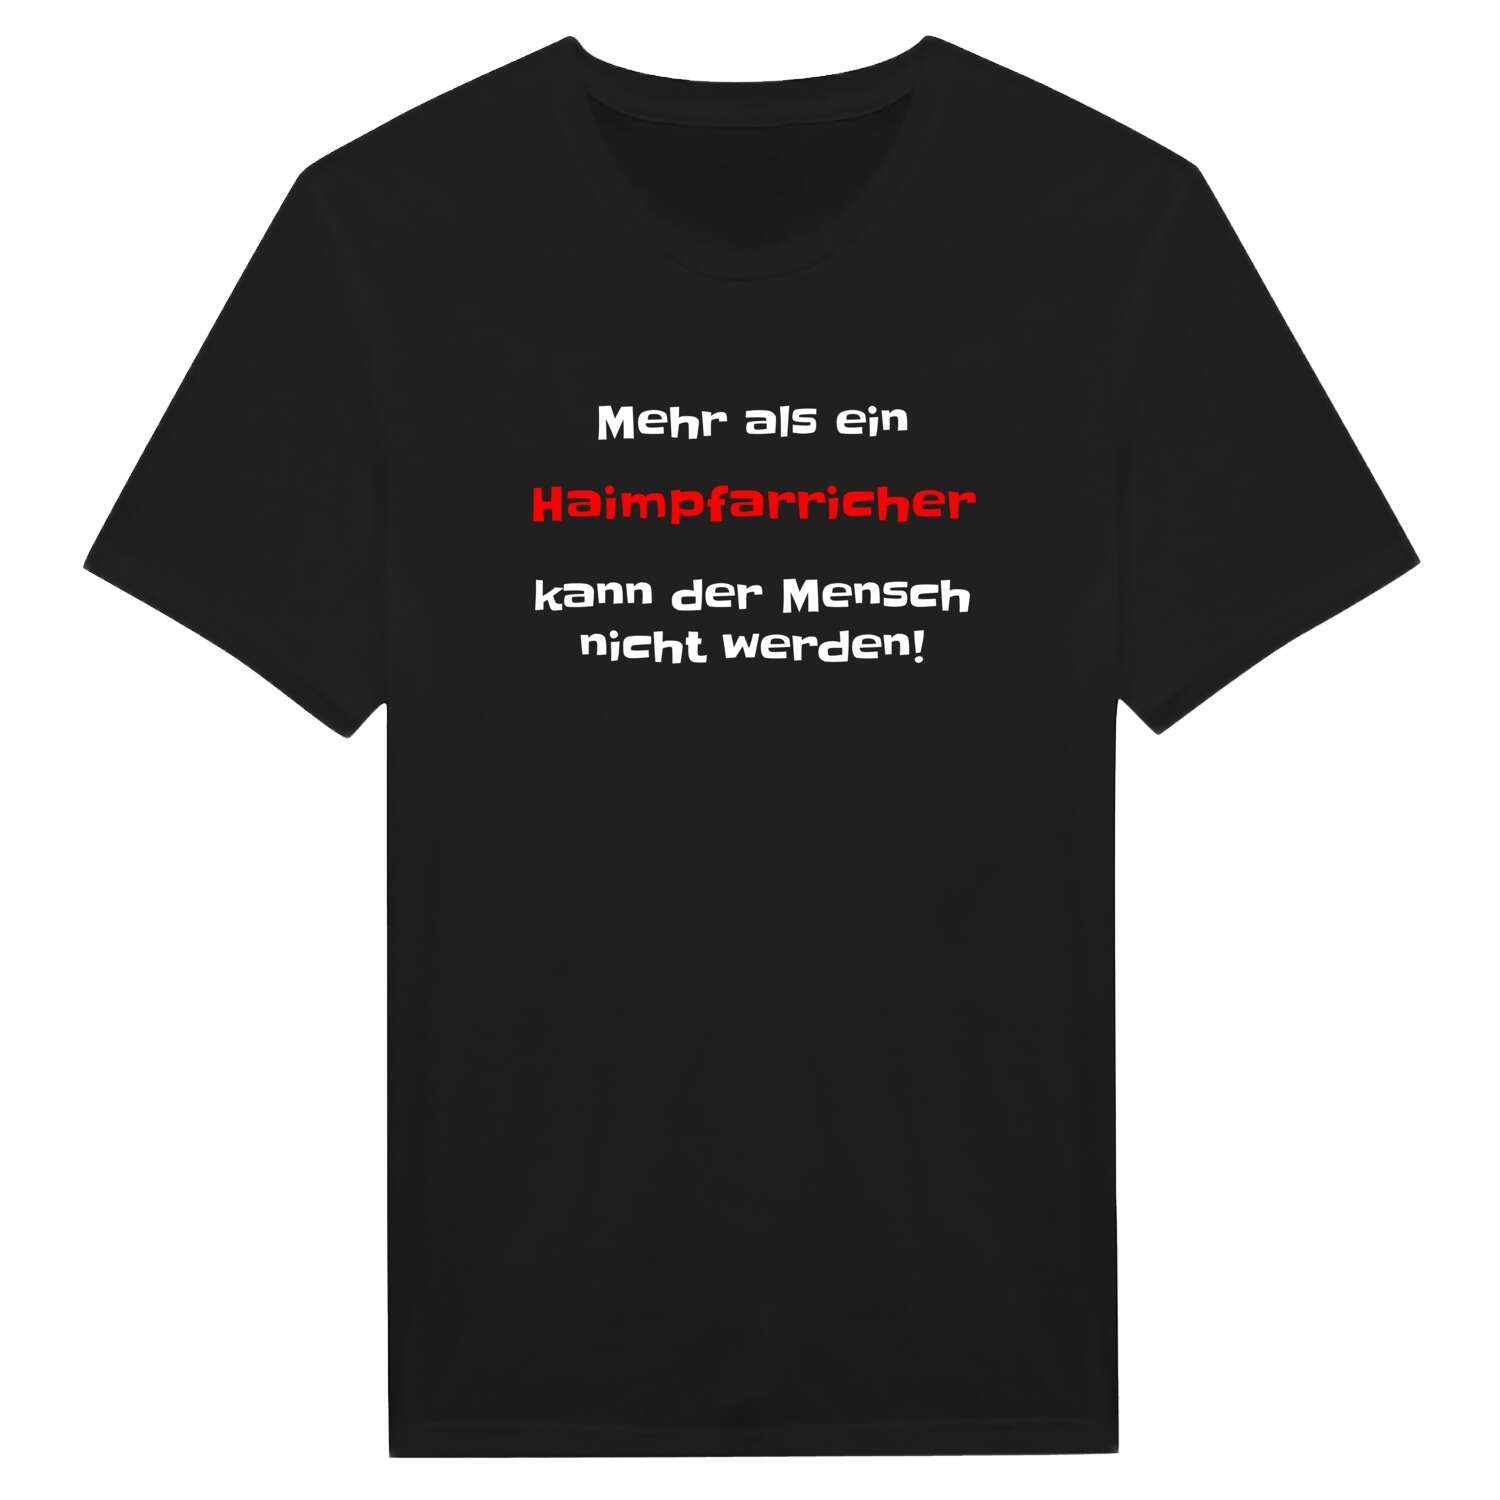 Haimpfarrich T-Shirt »Mehr als ein«